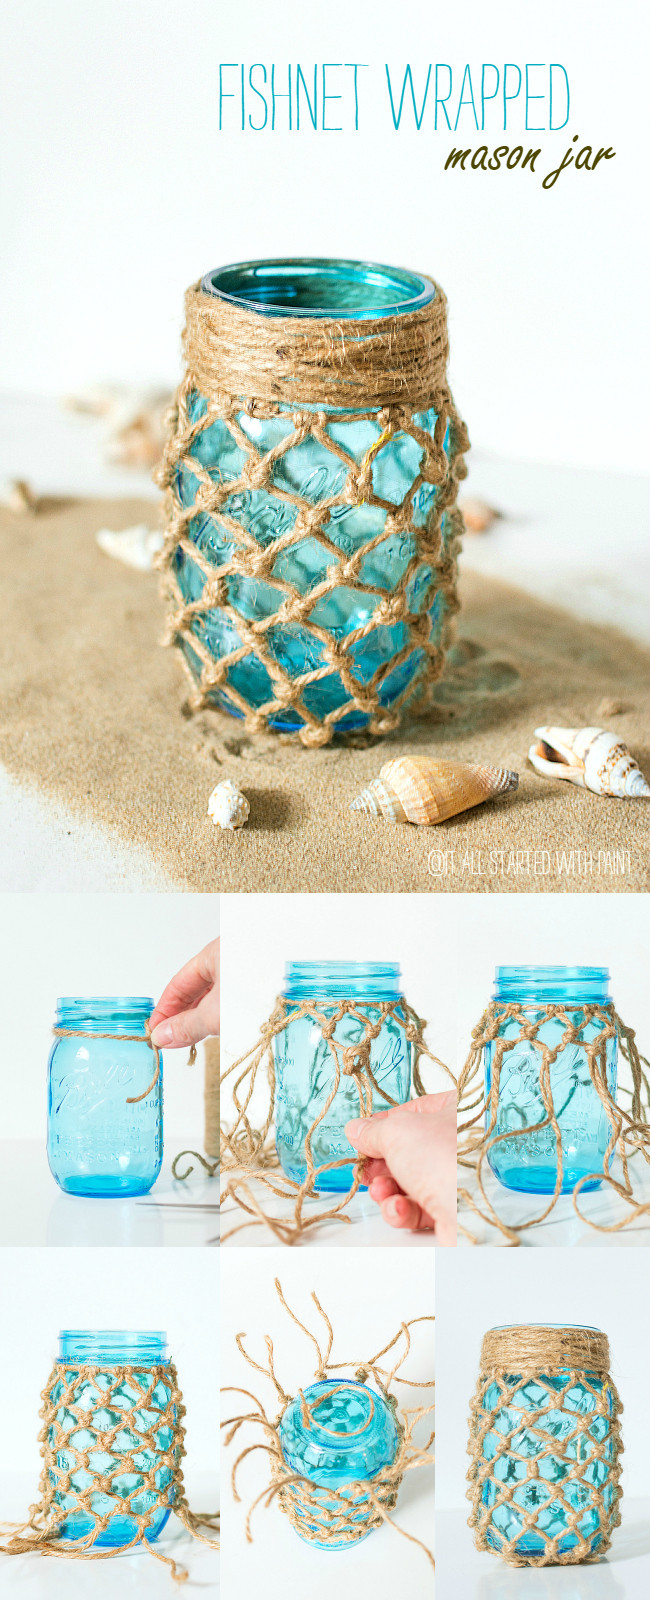 DIY Beach Wedding Ideas
 Ten Inspirational DIY Mason Jar Ideas For Weddings